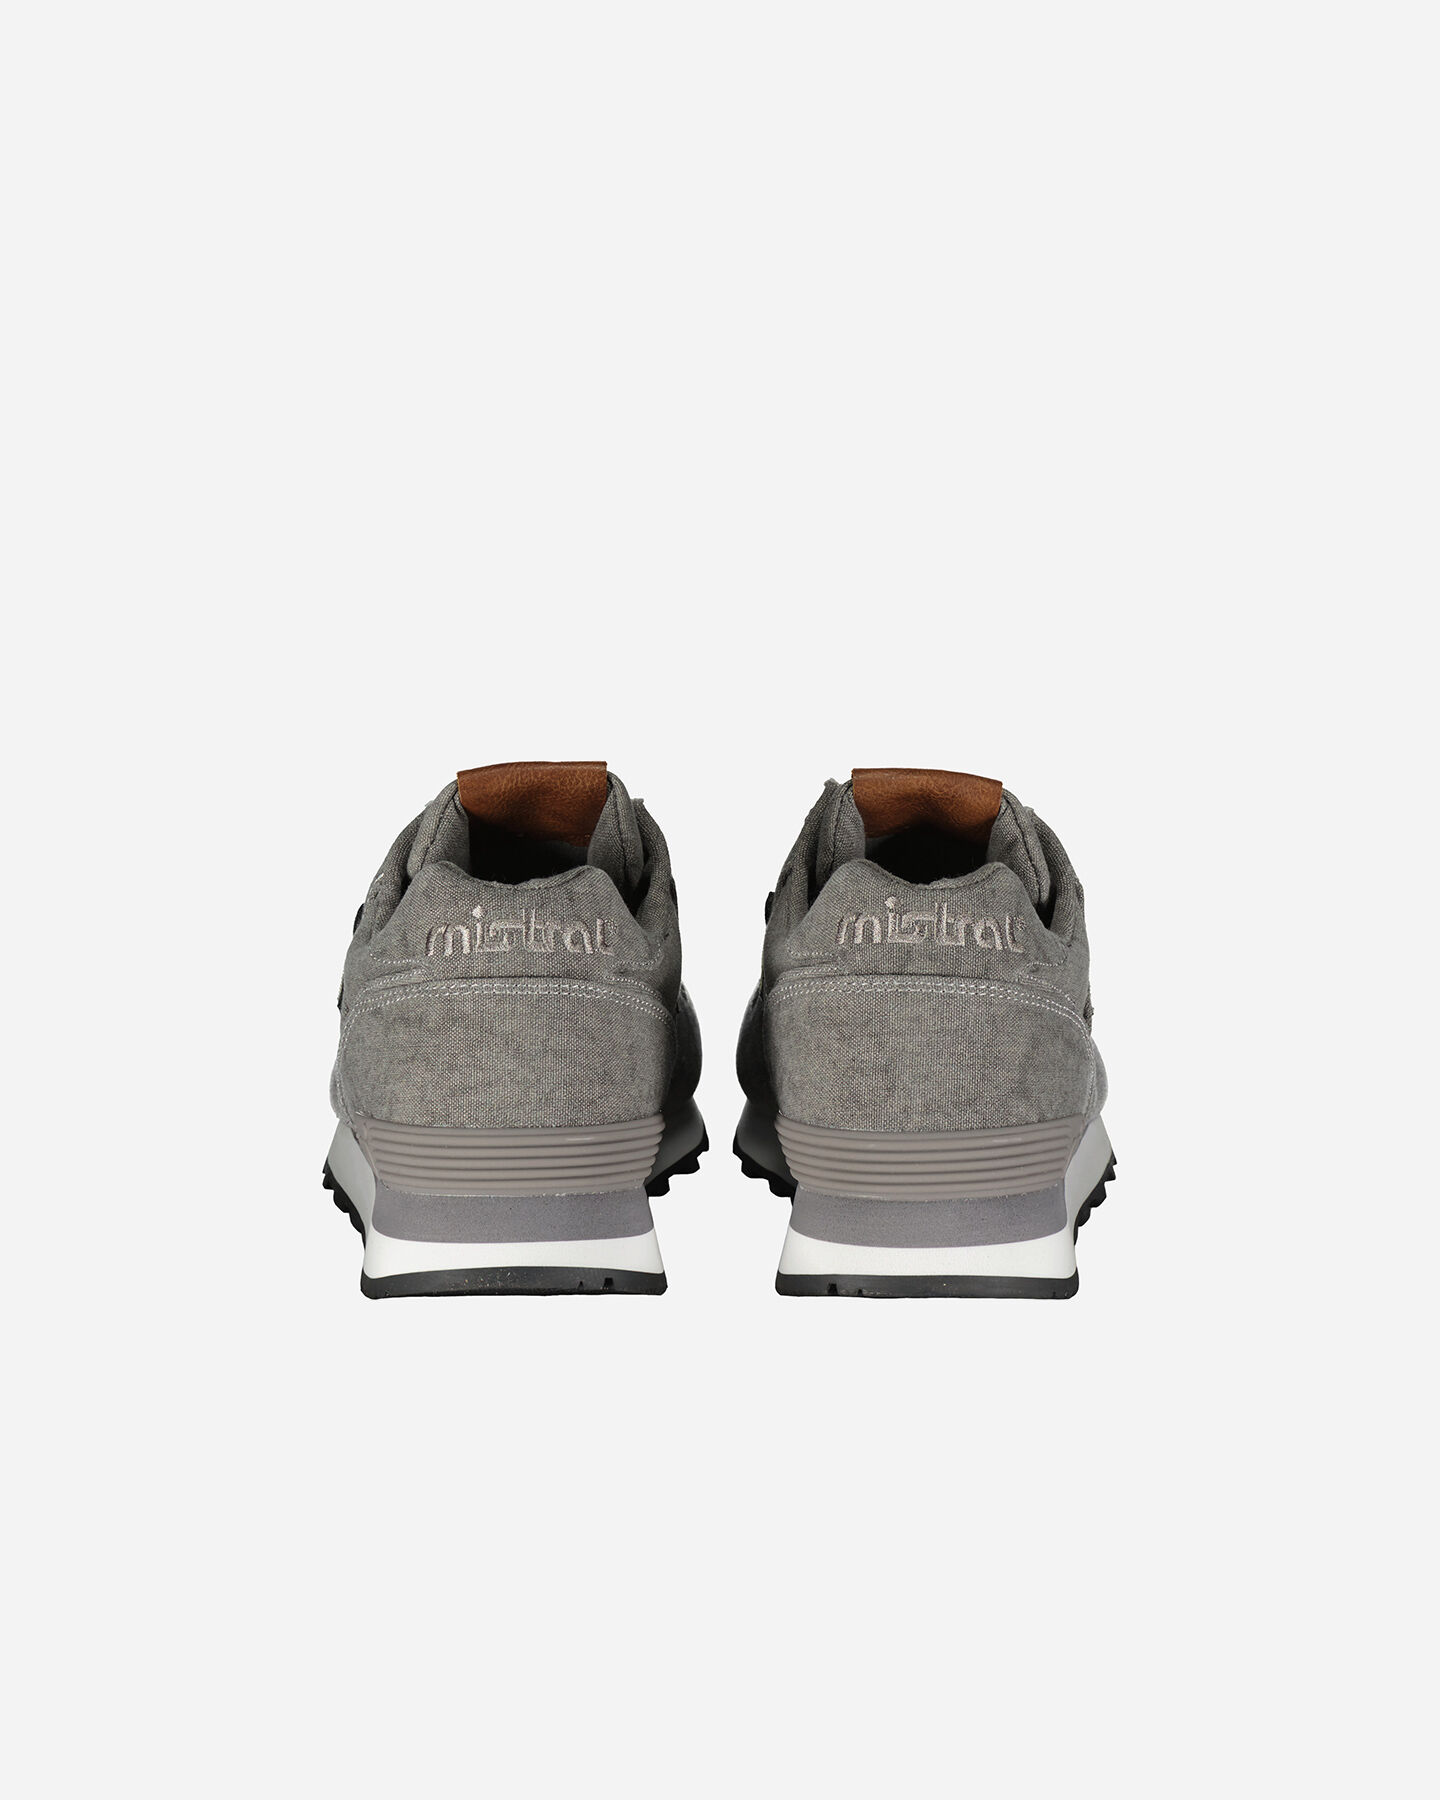  Scarpe sneakers MISTRAL SEVENTIES RETRO' M S4131979|04|39 scatto 4